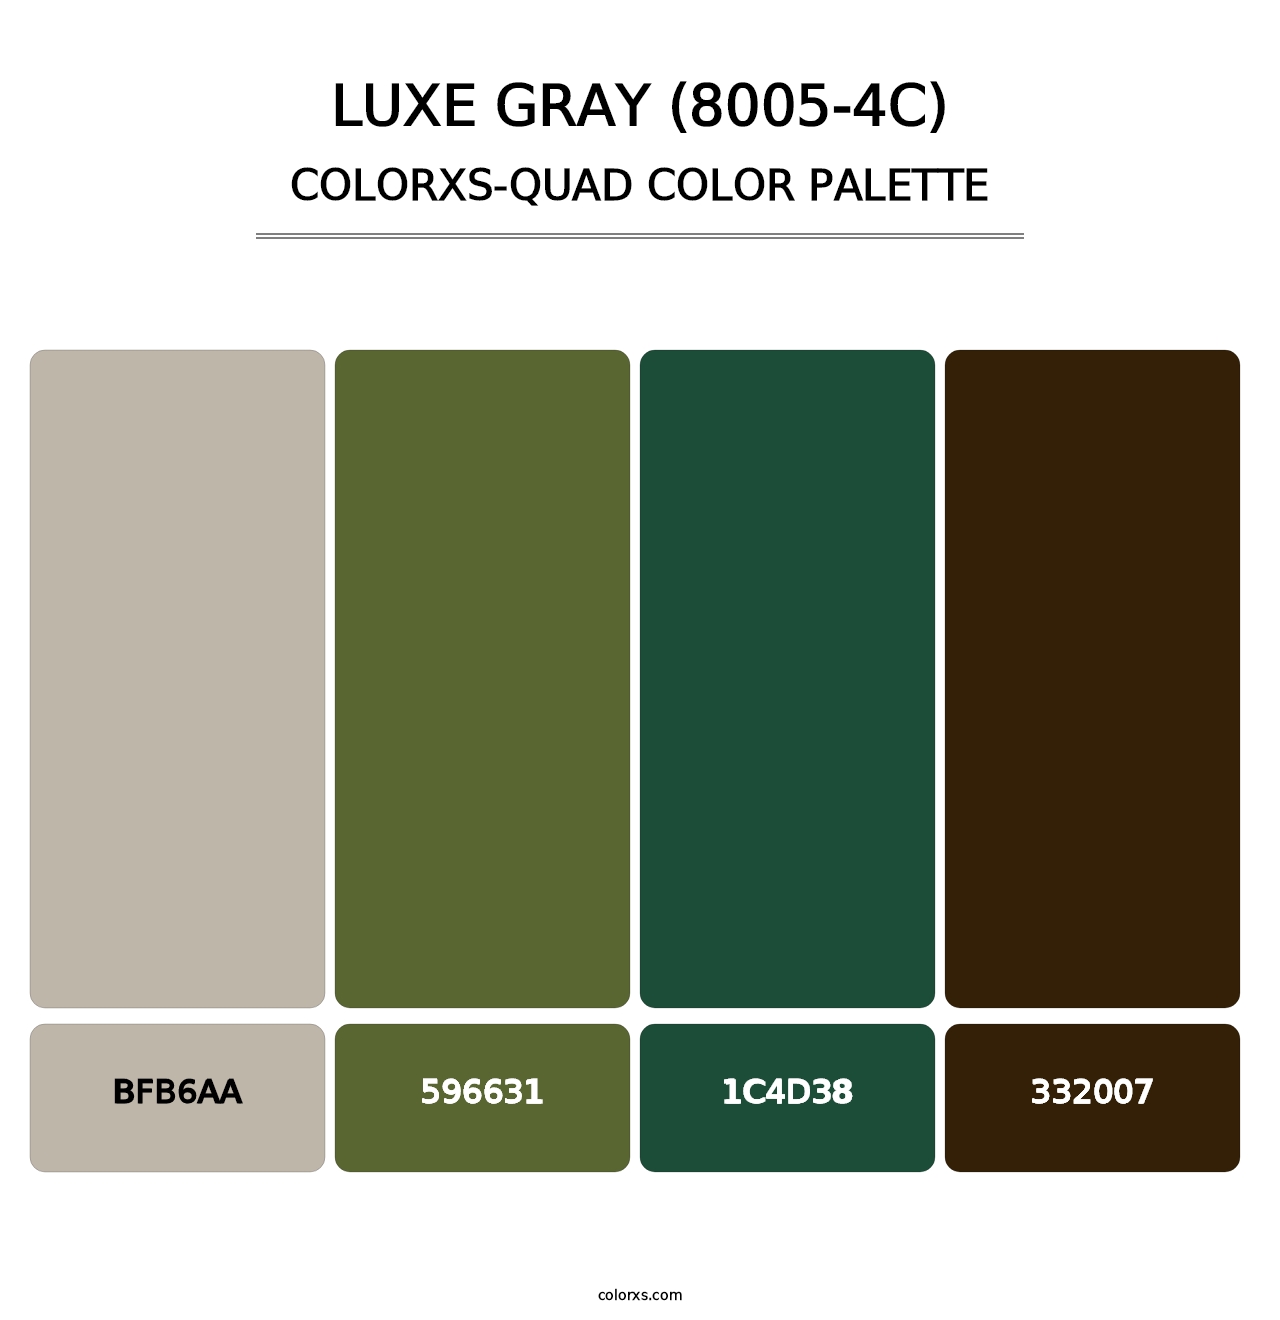 Luxe Gray (8005-4C) - Colorxs Quad Palette